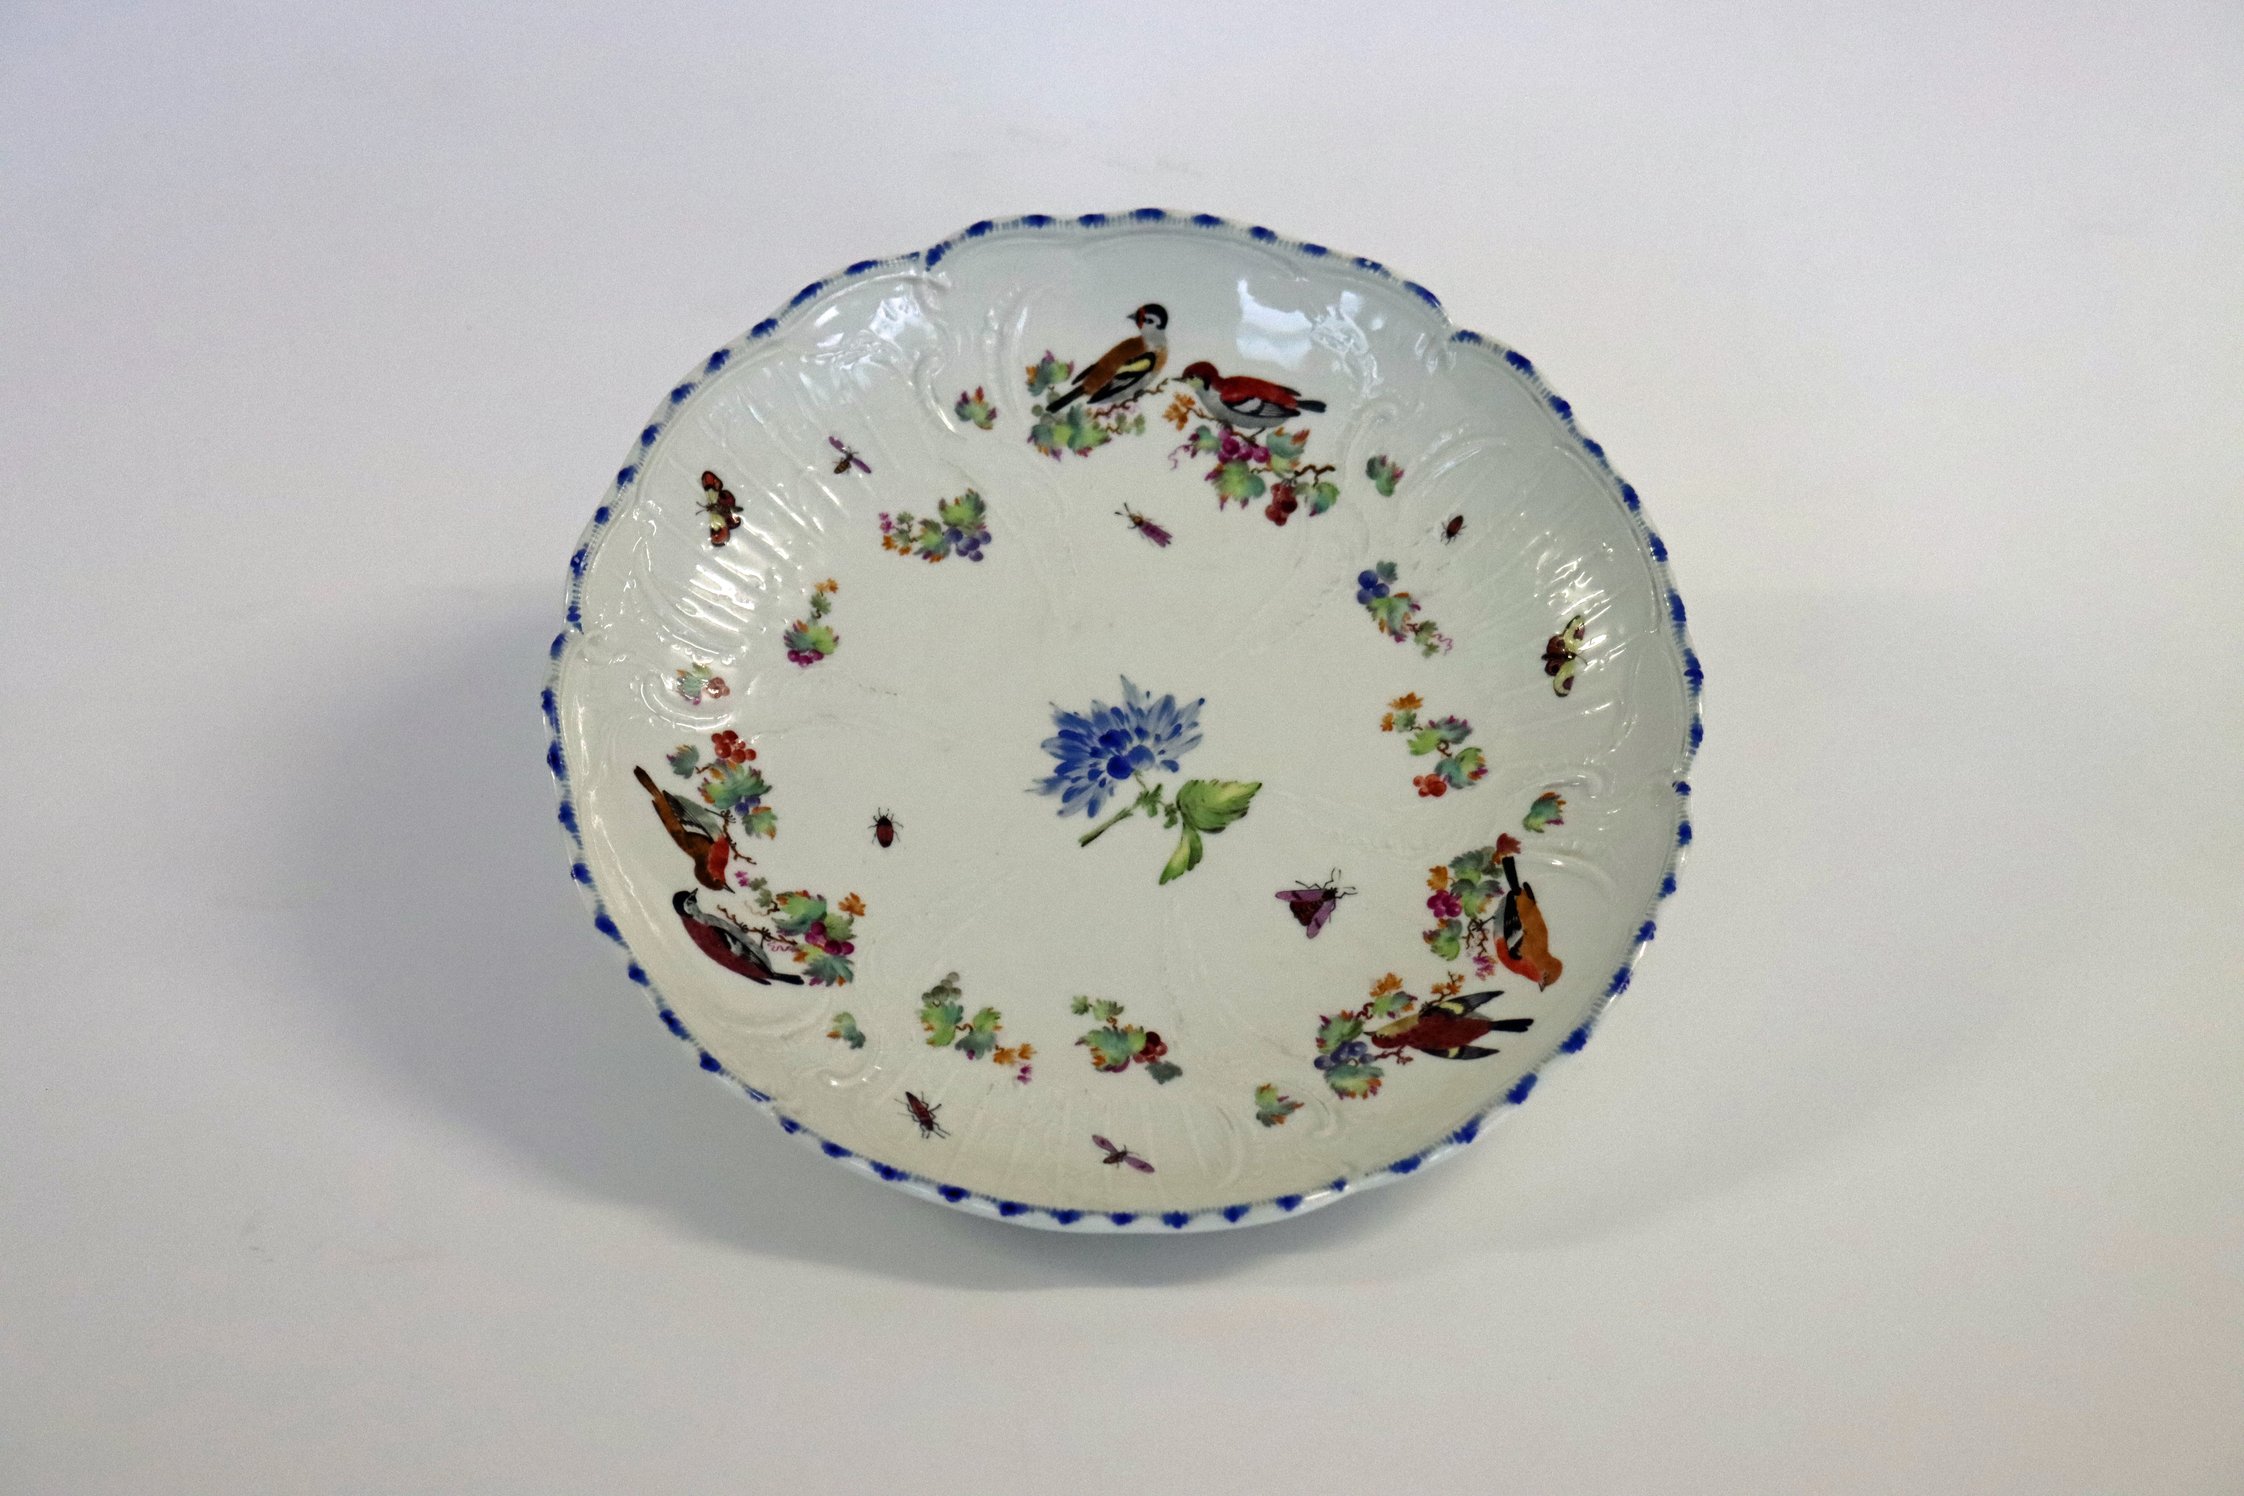 Porzellanservice aus Kartlow: Teller mit Blumen- und Vogelmotiven